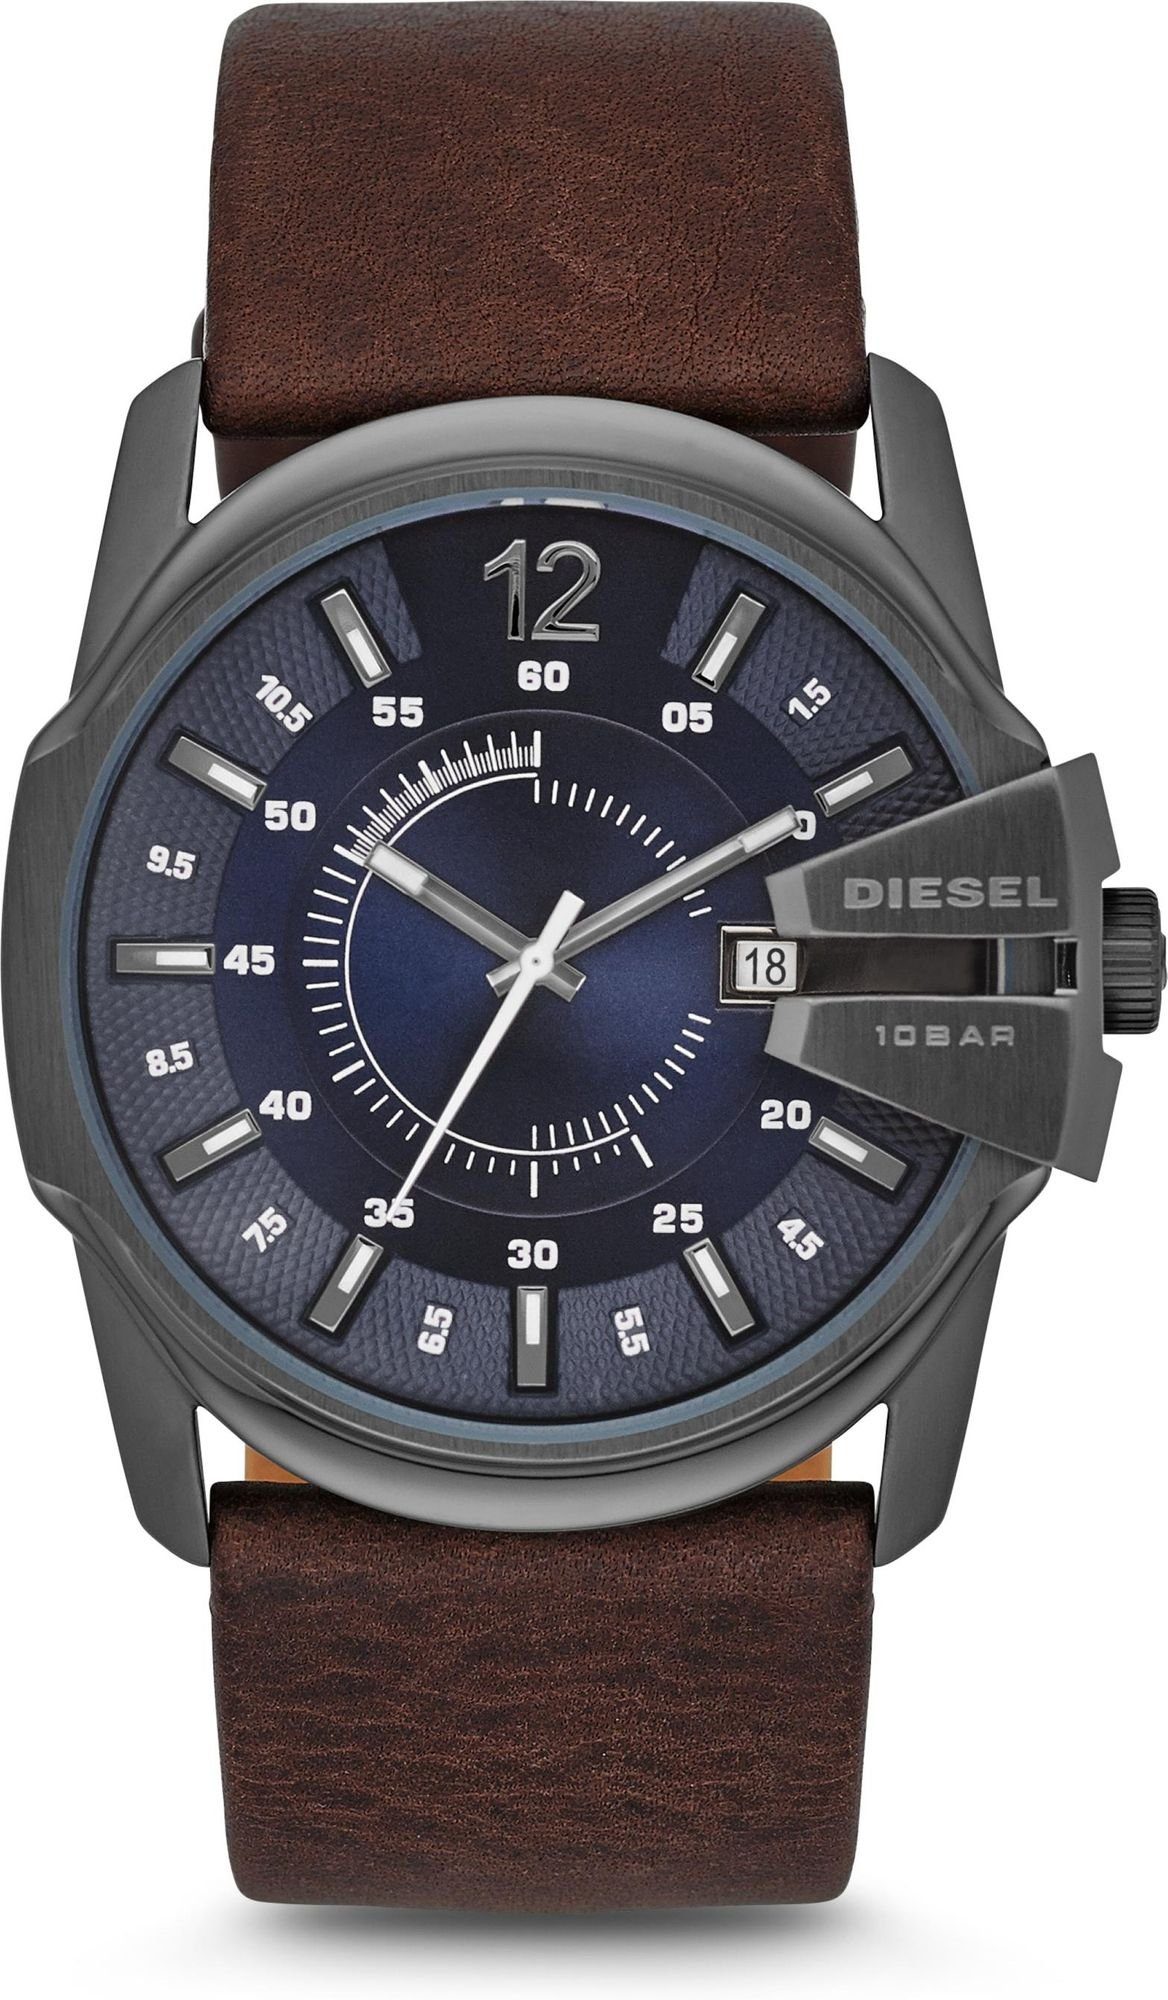 Diesel Mechanische Uhr DIESEL MASTER CHIEF DZ1618 Herrenarmbanduhr Design  Highlight, Design Highlight